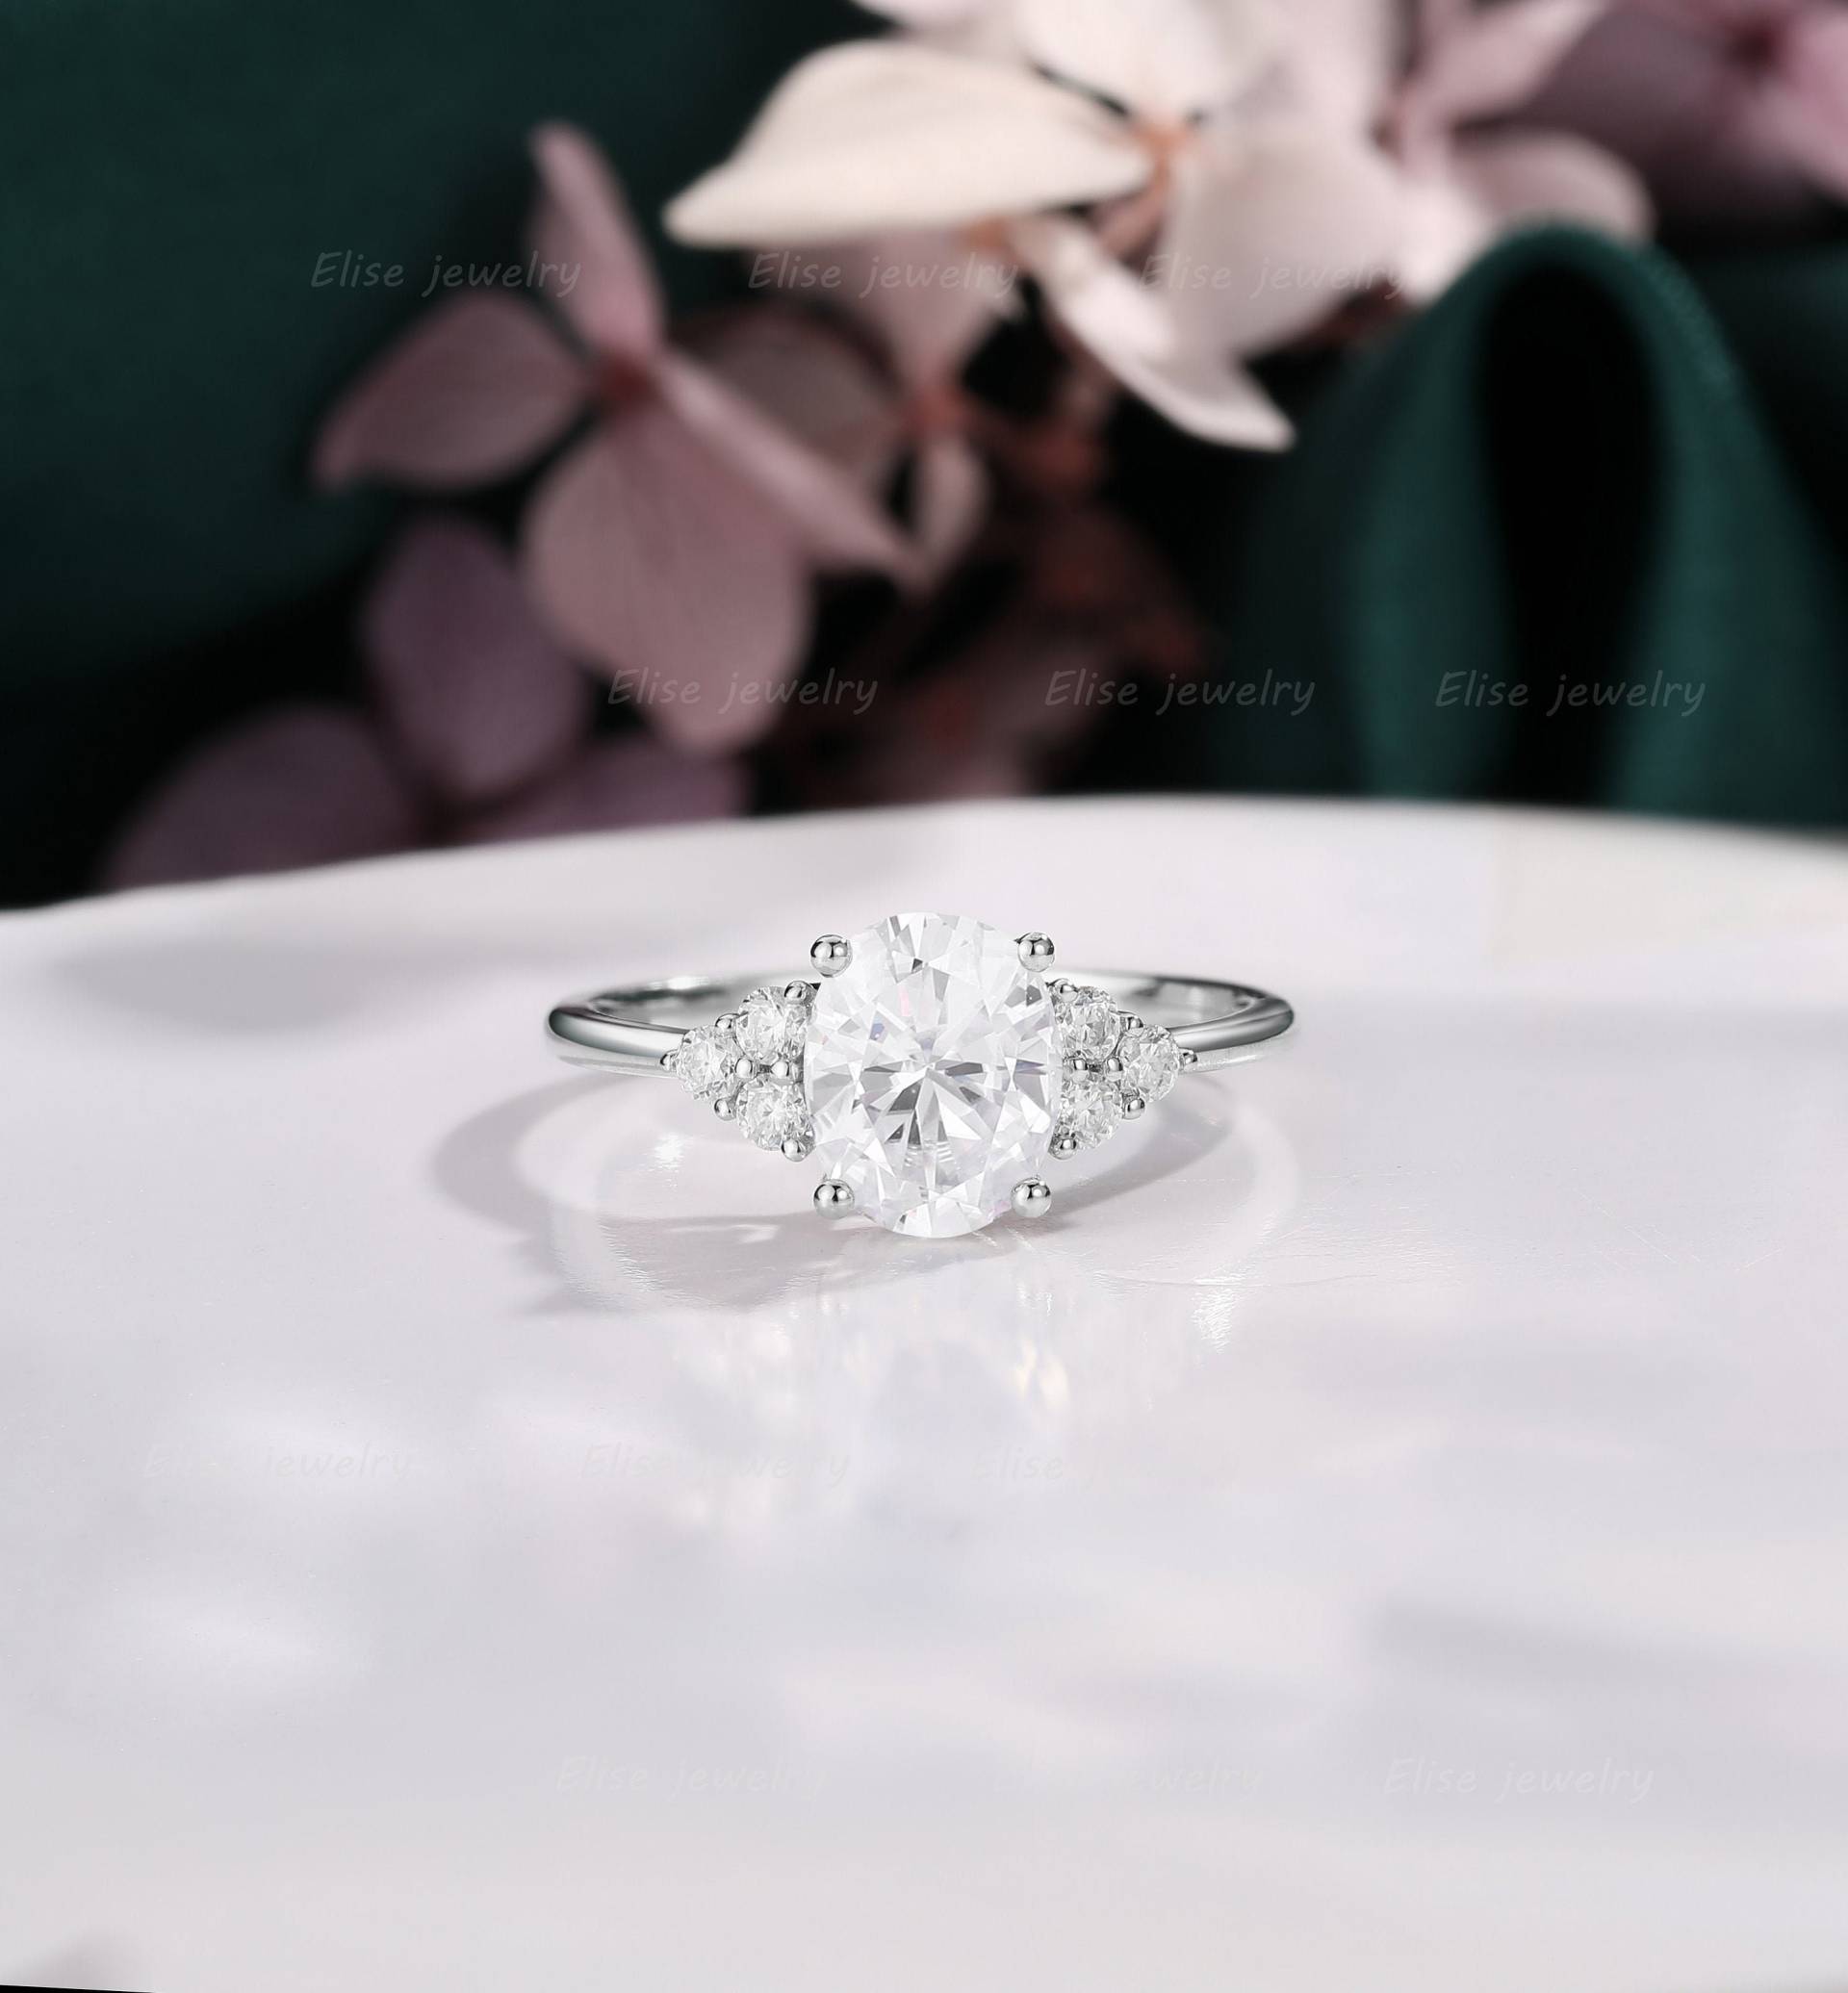 Einzigartiger Ovaler Moissanit Verlobungsring| Vintage Weißgold Ring| Moissanit/Diamant Cluster Ring Für Frauen| Stapelring von EliseJewelryDesigns